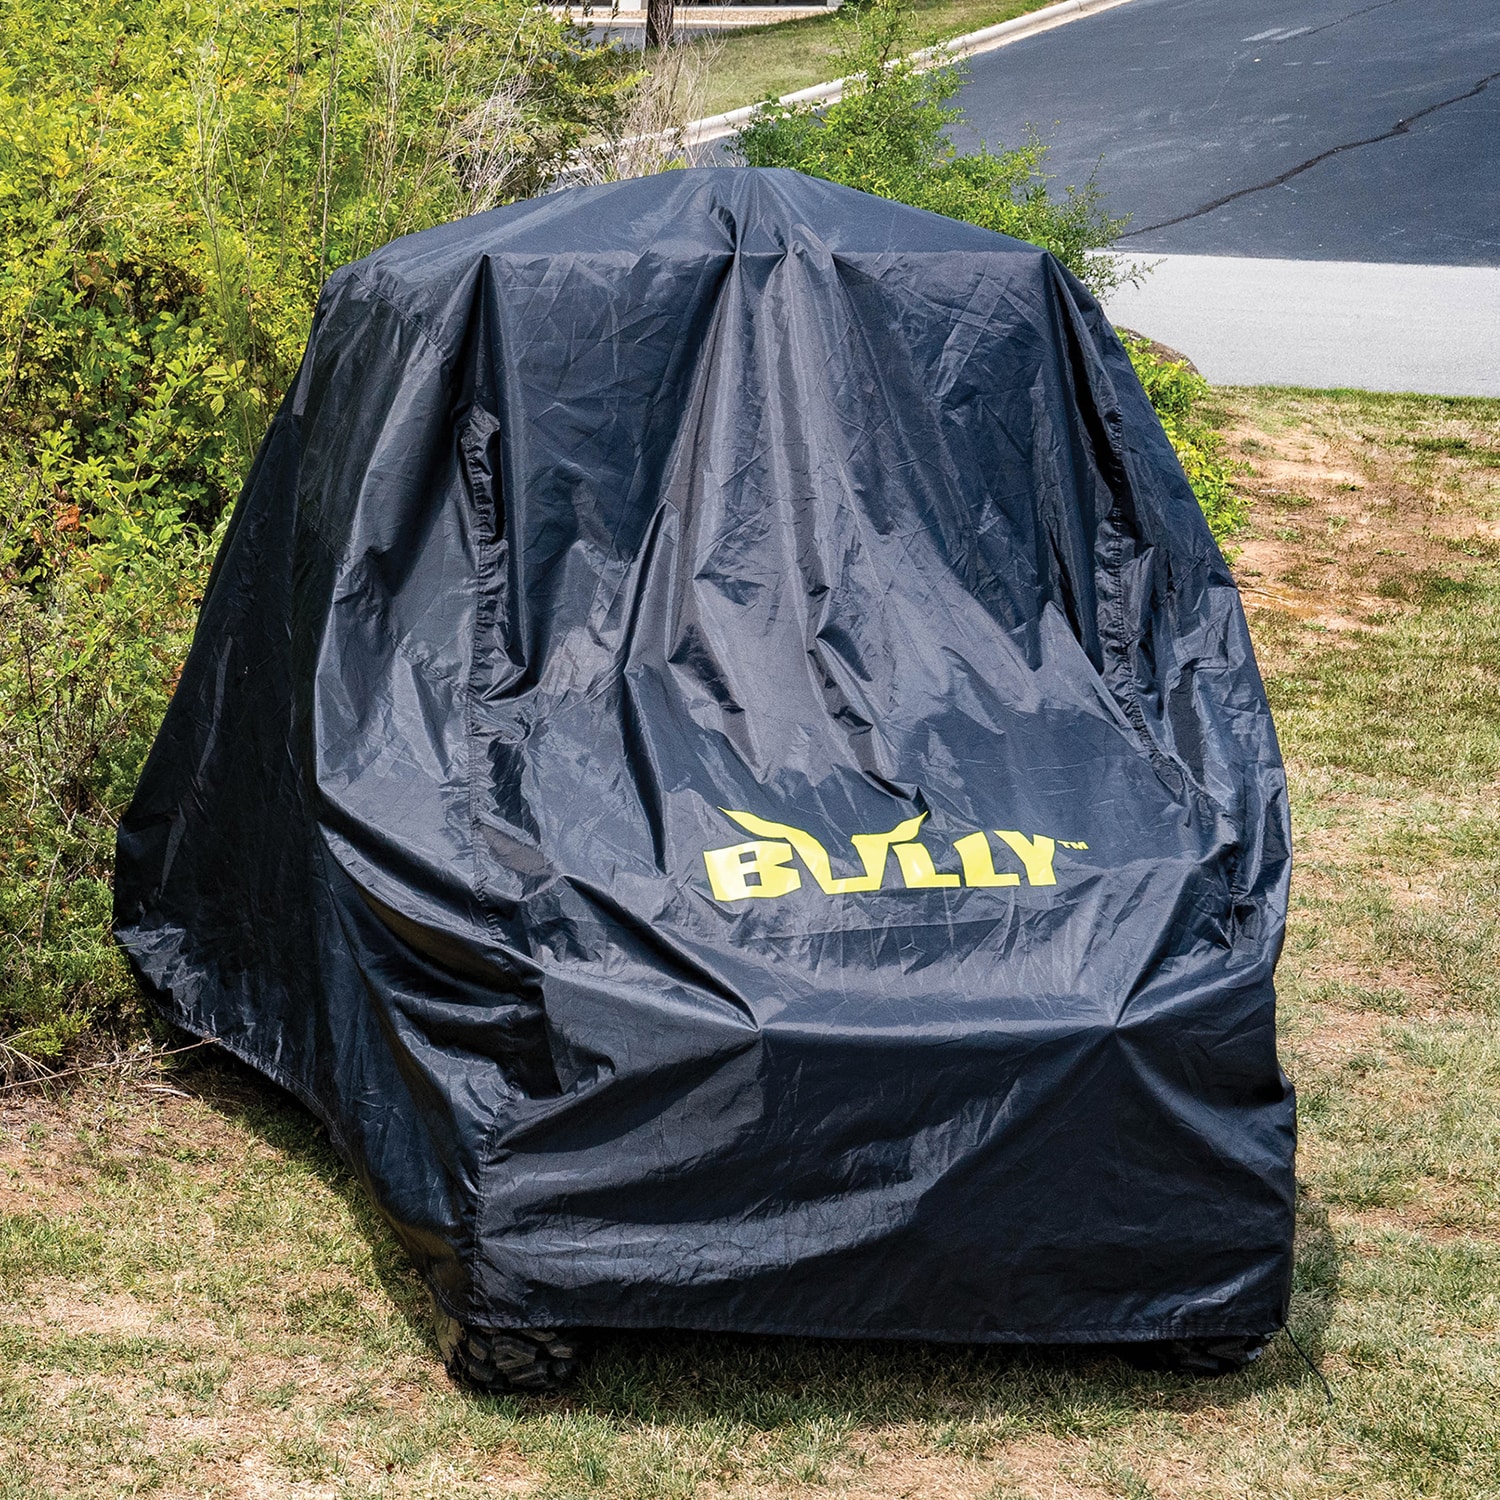 210D Nylon Vehicle Cover for UTVs,Side by Side, UTV Accessorie